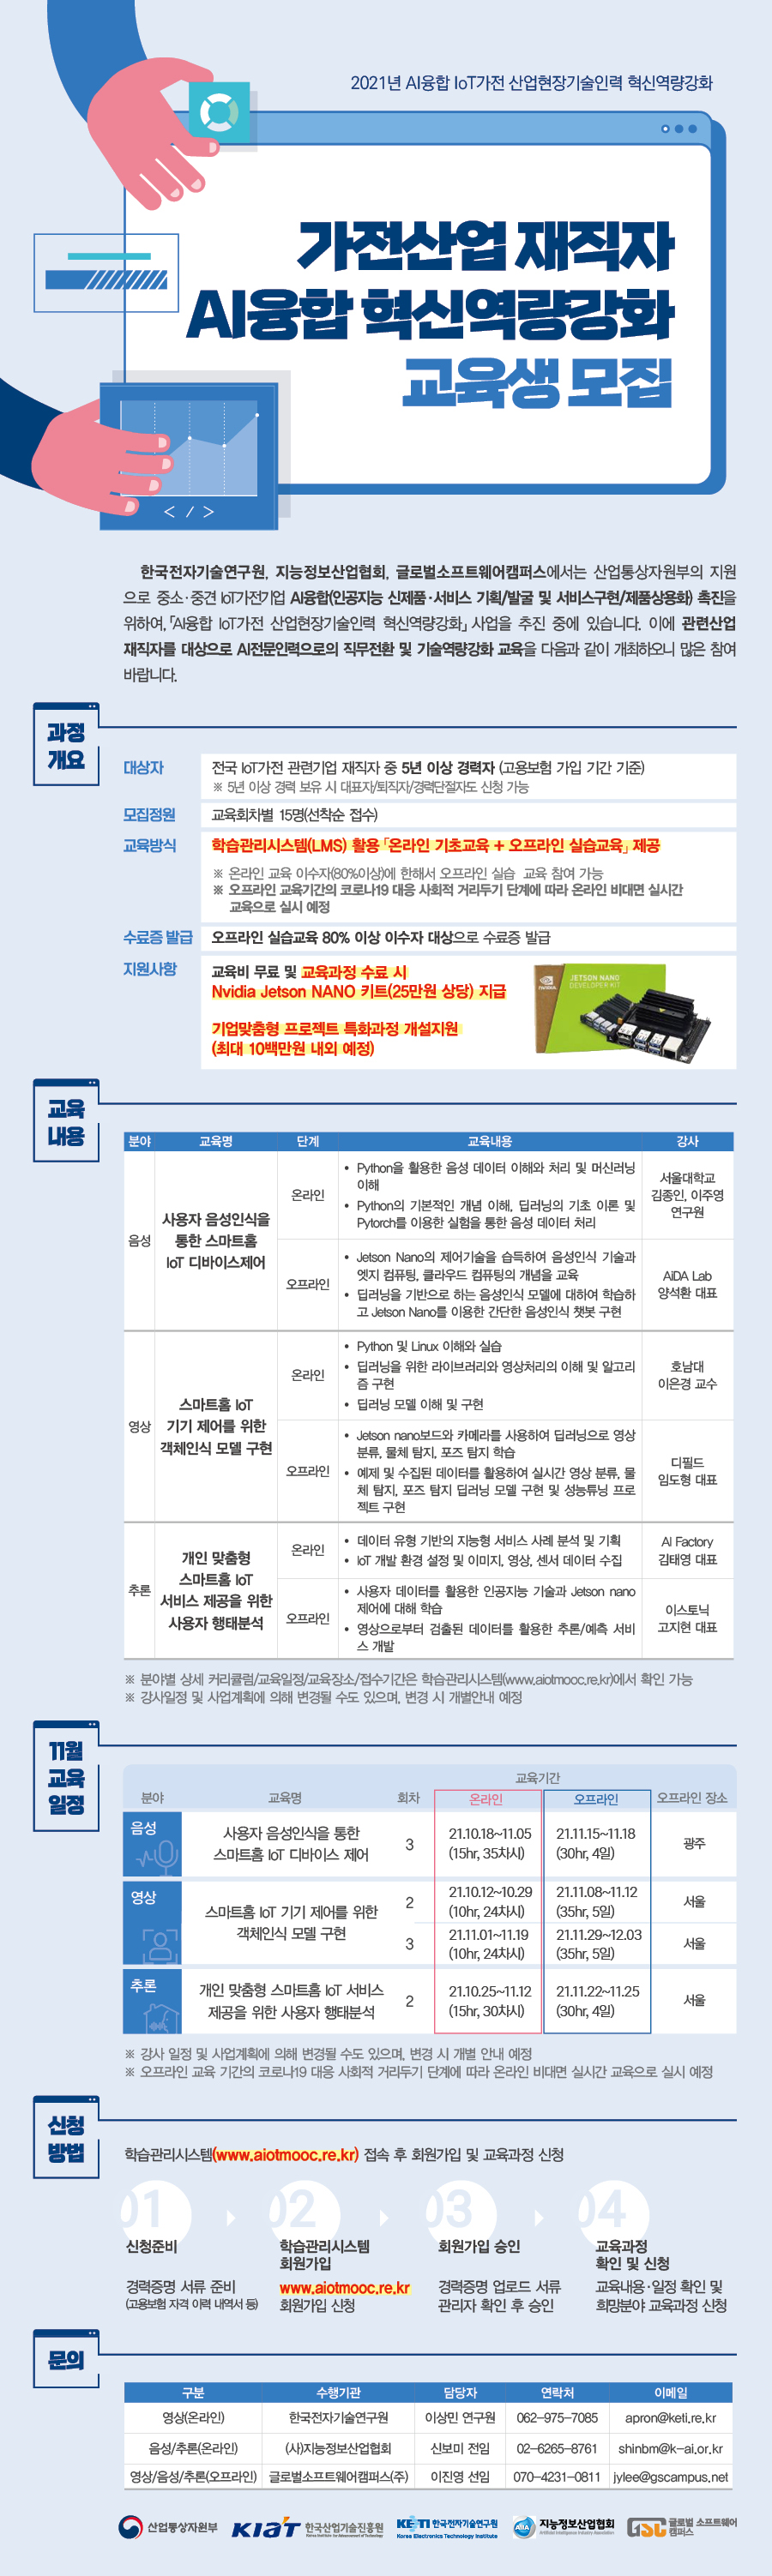 한국전자기술연구원-2021 가전산업 AI융합 재직자 혁신역량강화 교육 수강생모집 웹안내장_11월.jpg